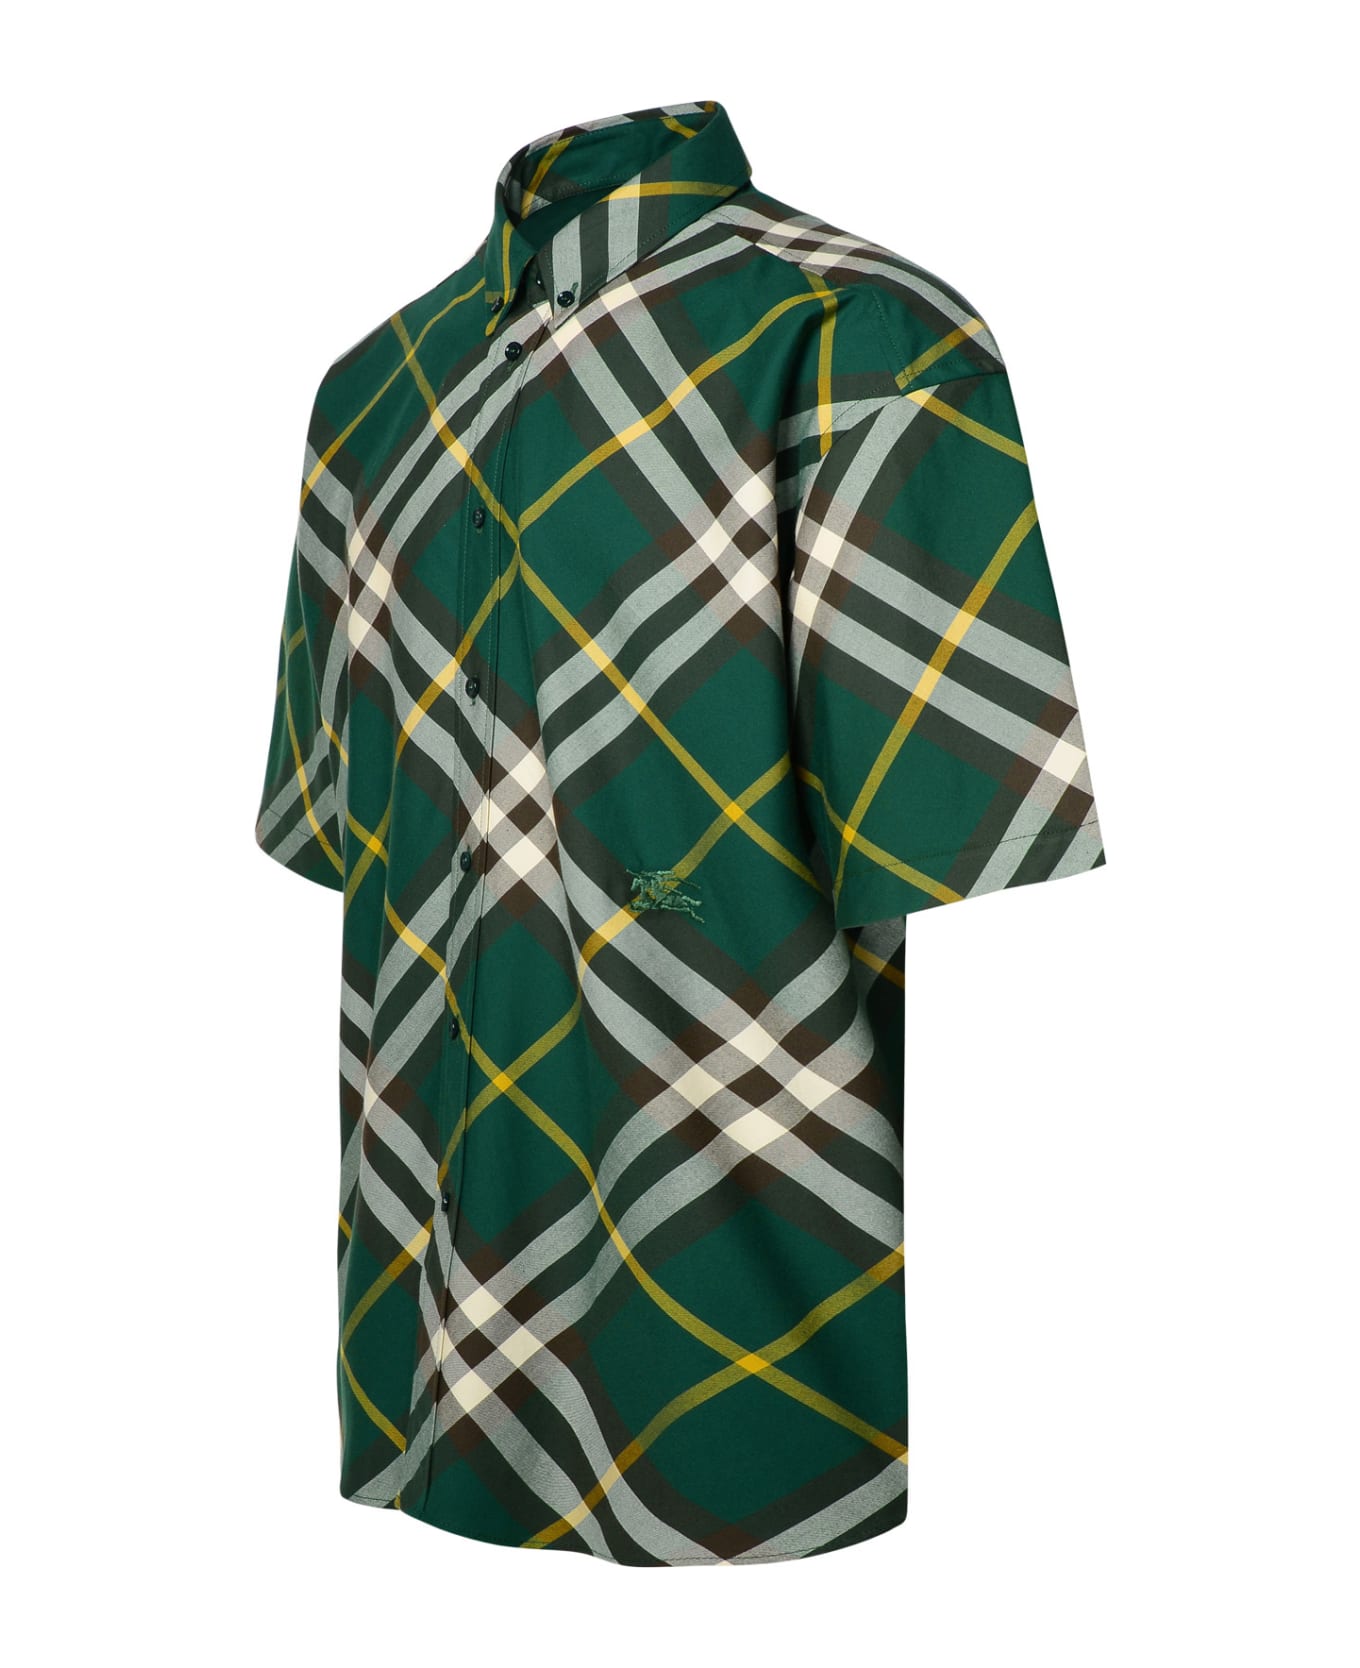 Burberry Green Cotton Shirt - GREEN/NEUTRALS シャツ